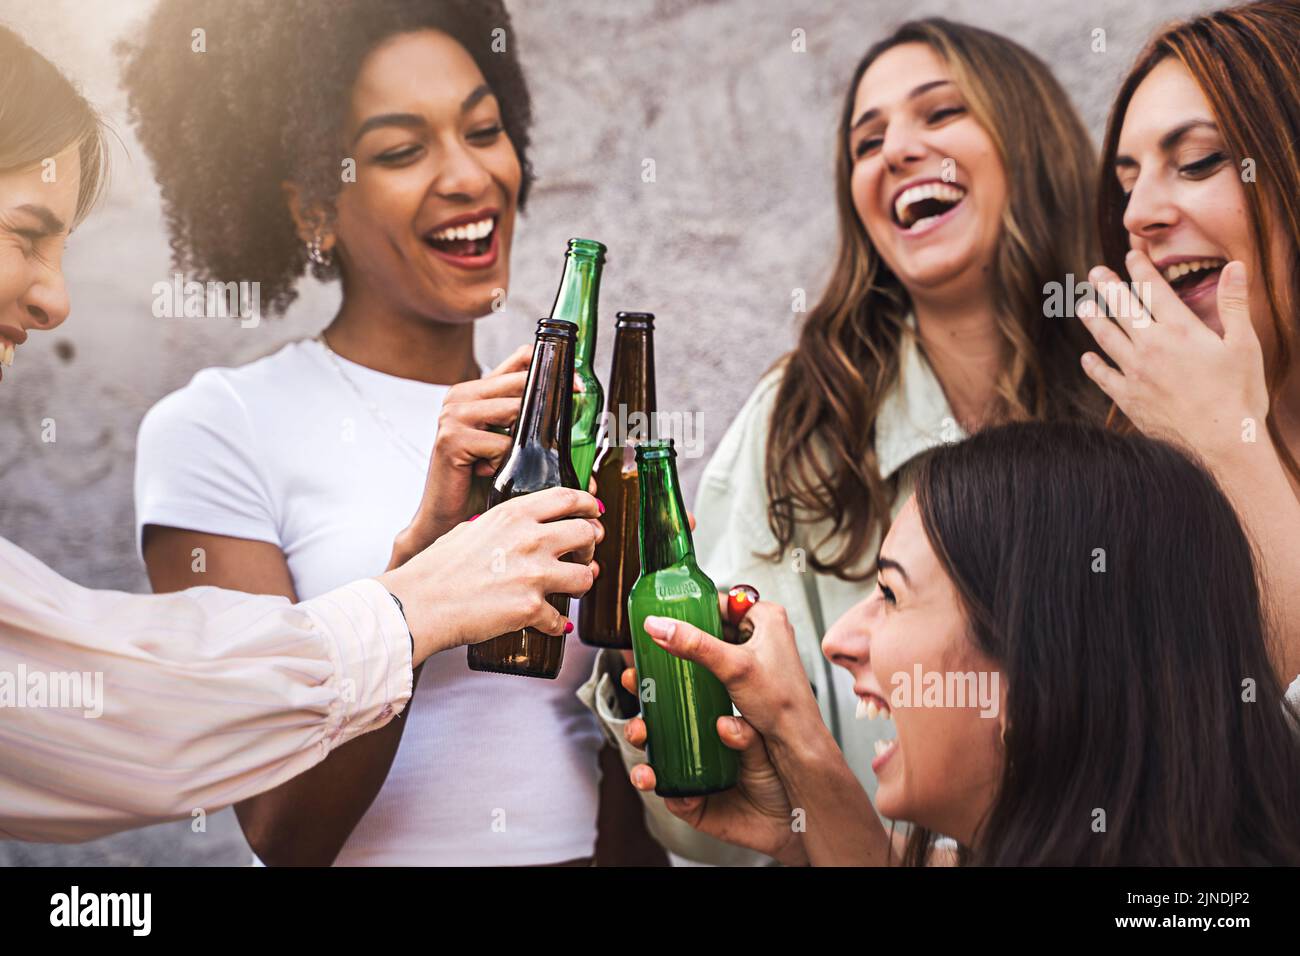 Fête de la bière des femmes - groupe multiethnique de filles gaies gaies s'amusant à griller et à rire ensemble - se concentrer sur les bouteilles - neutre backgroun Banque D'Images